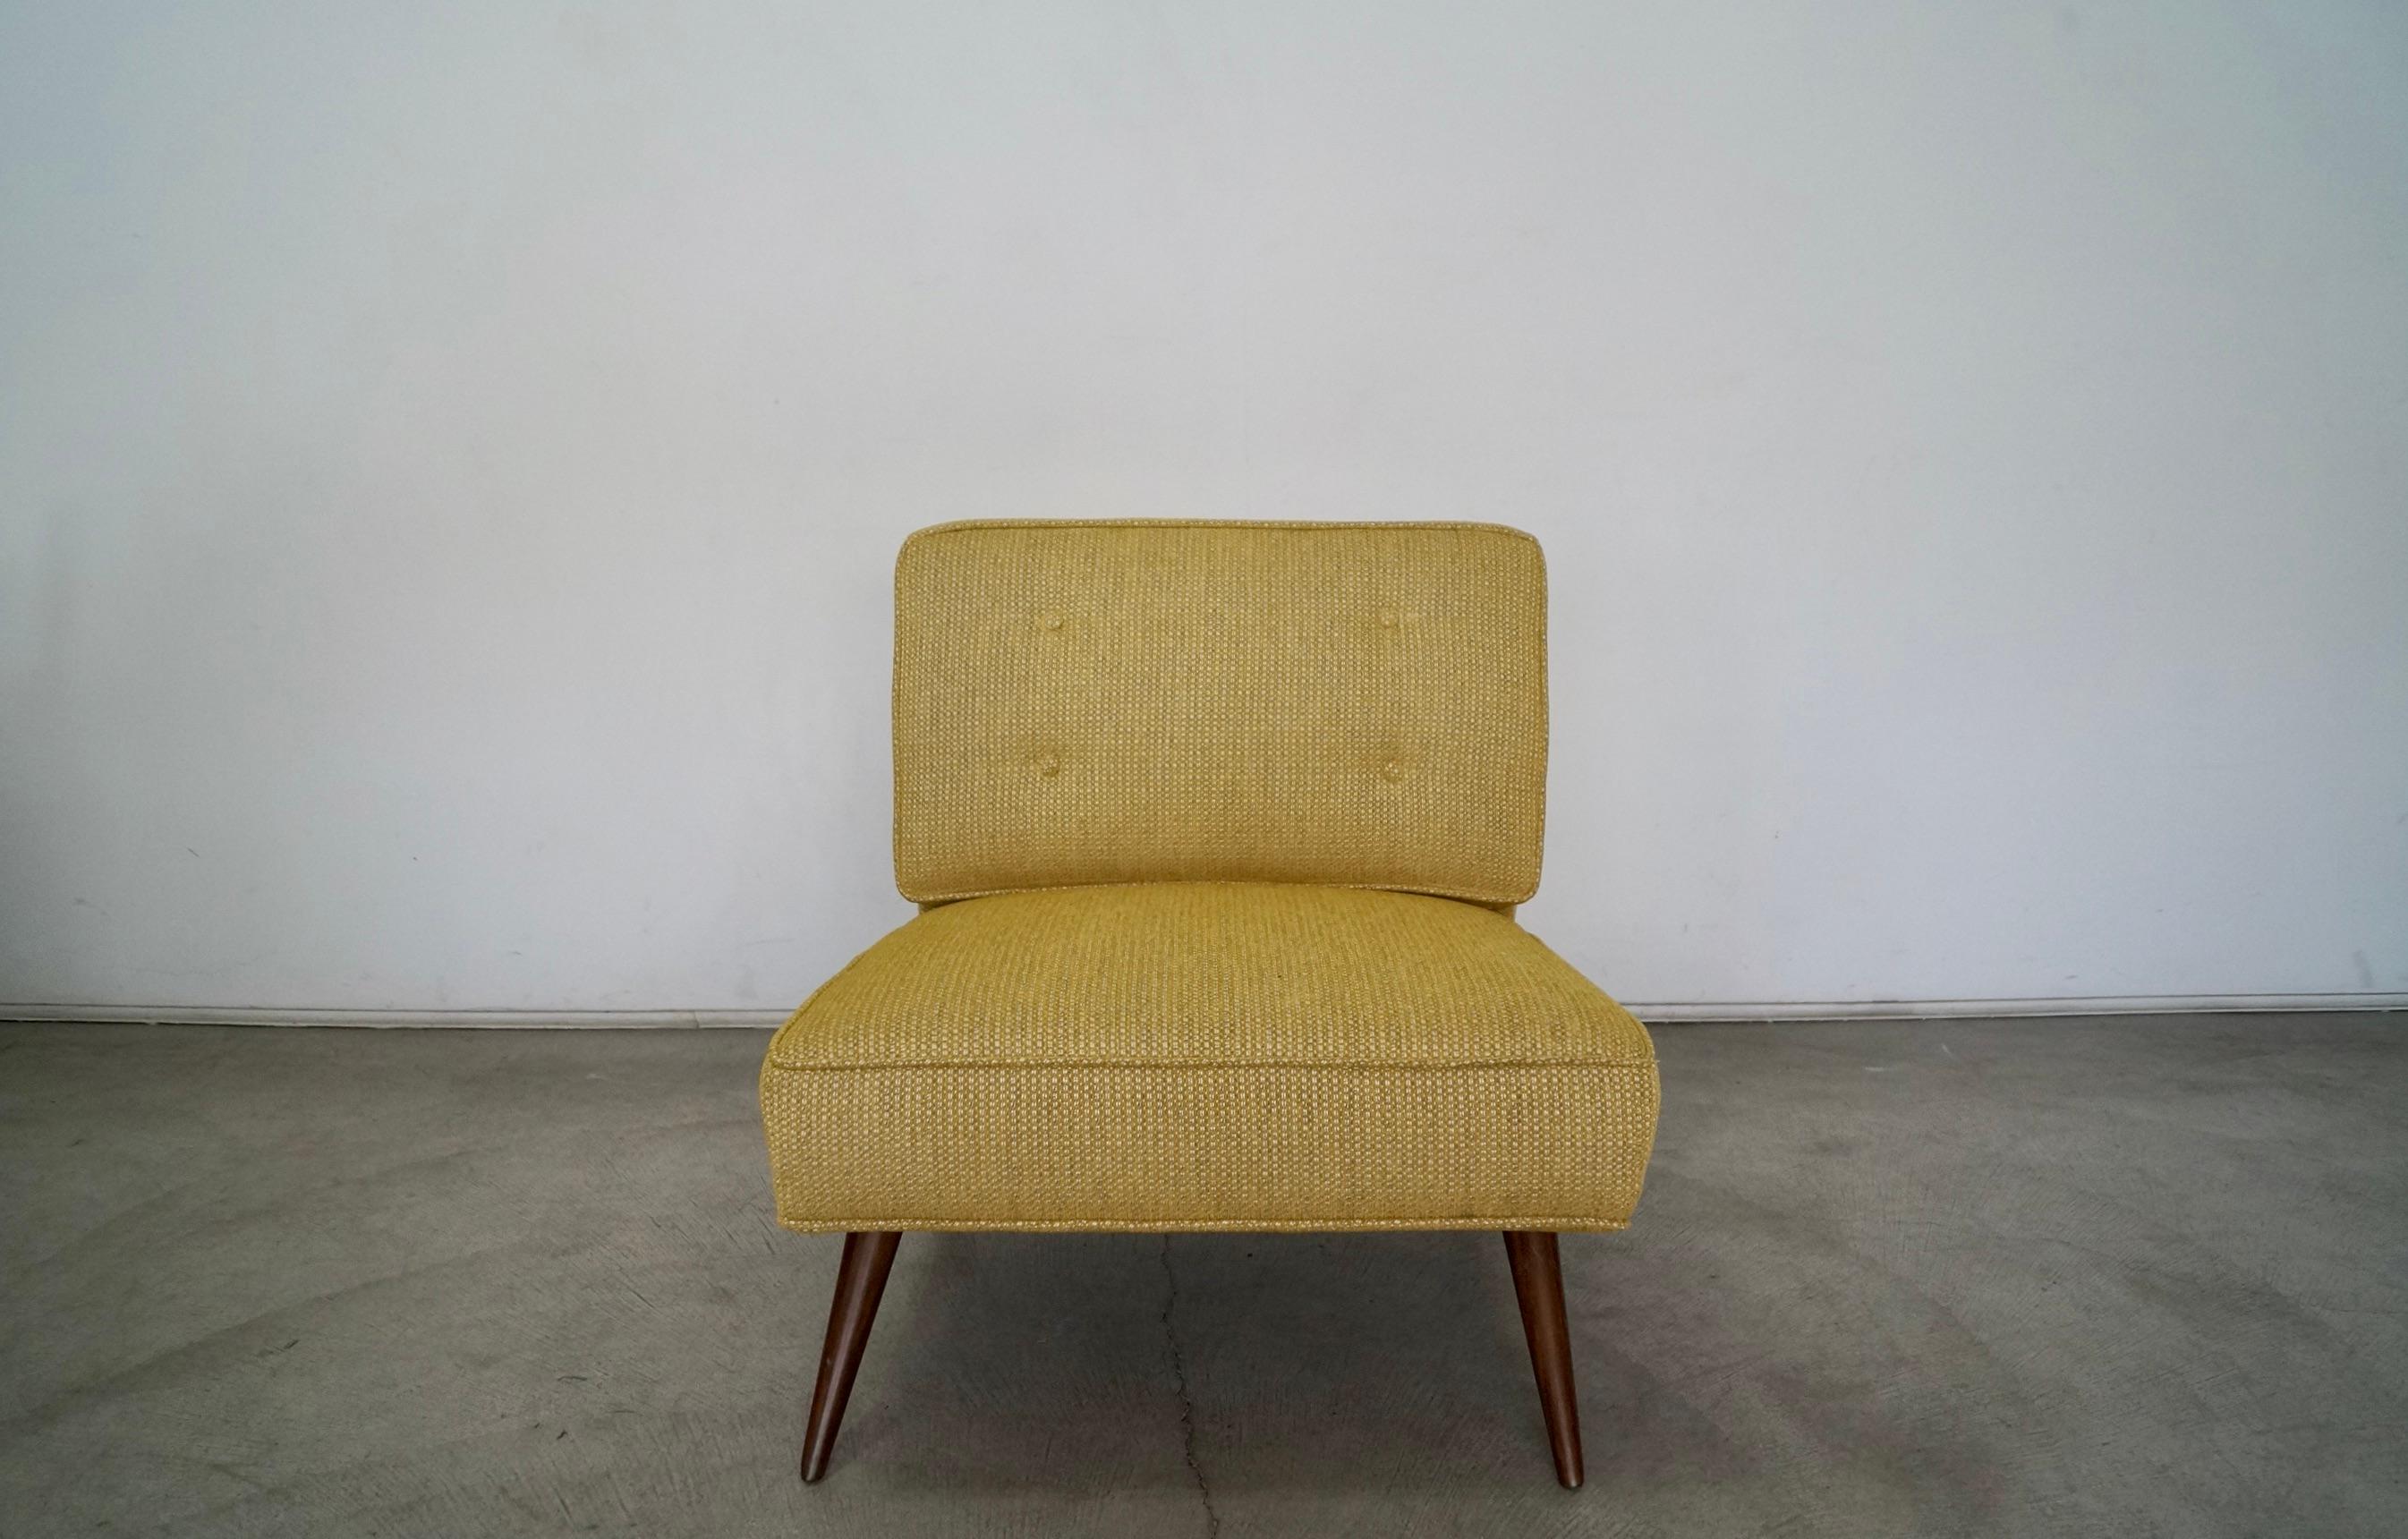 Vintage 1950's Midcentury Modern Lounge Chair zu verkaufen. Die Beine wurden professionell in Nussbaum nachgearbeitet und mit neuem Stoff und Schaumstoff gepolstert. Der Stoff ist goldfarben mit einem grauen und weißen Unterton, der wunderschön